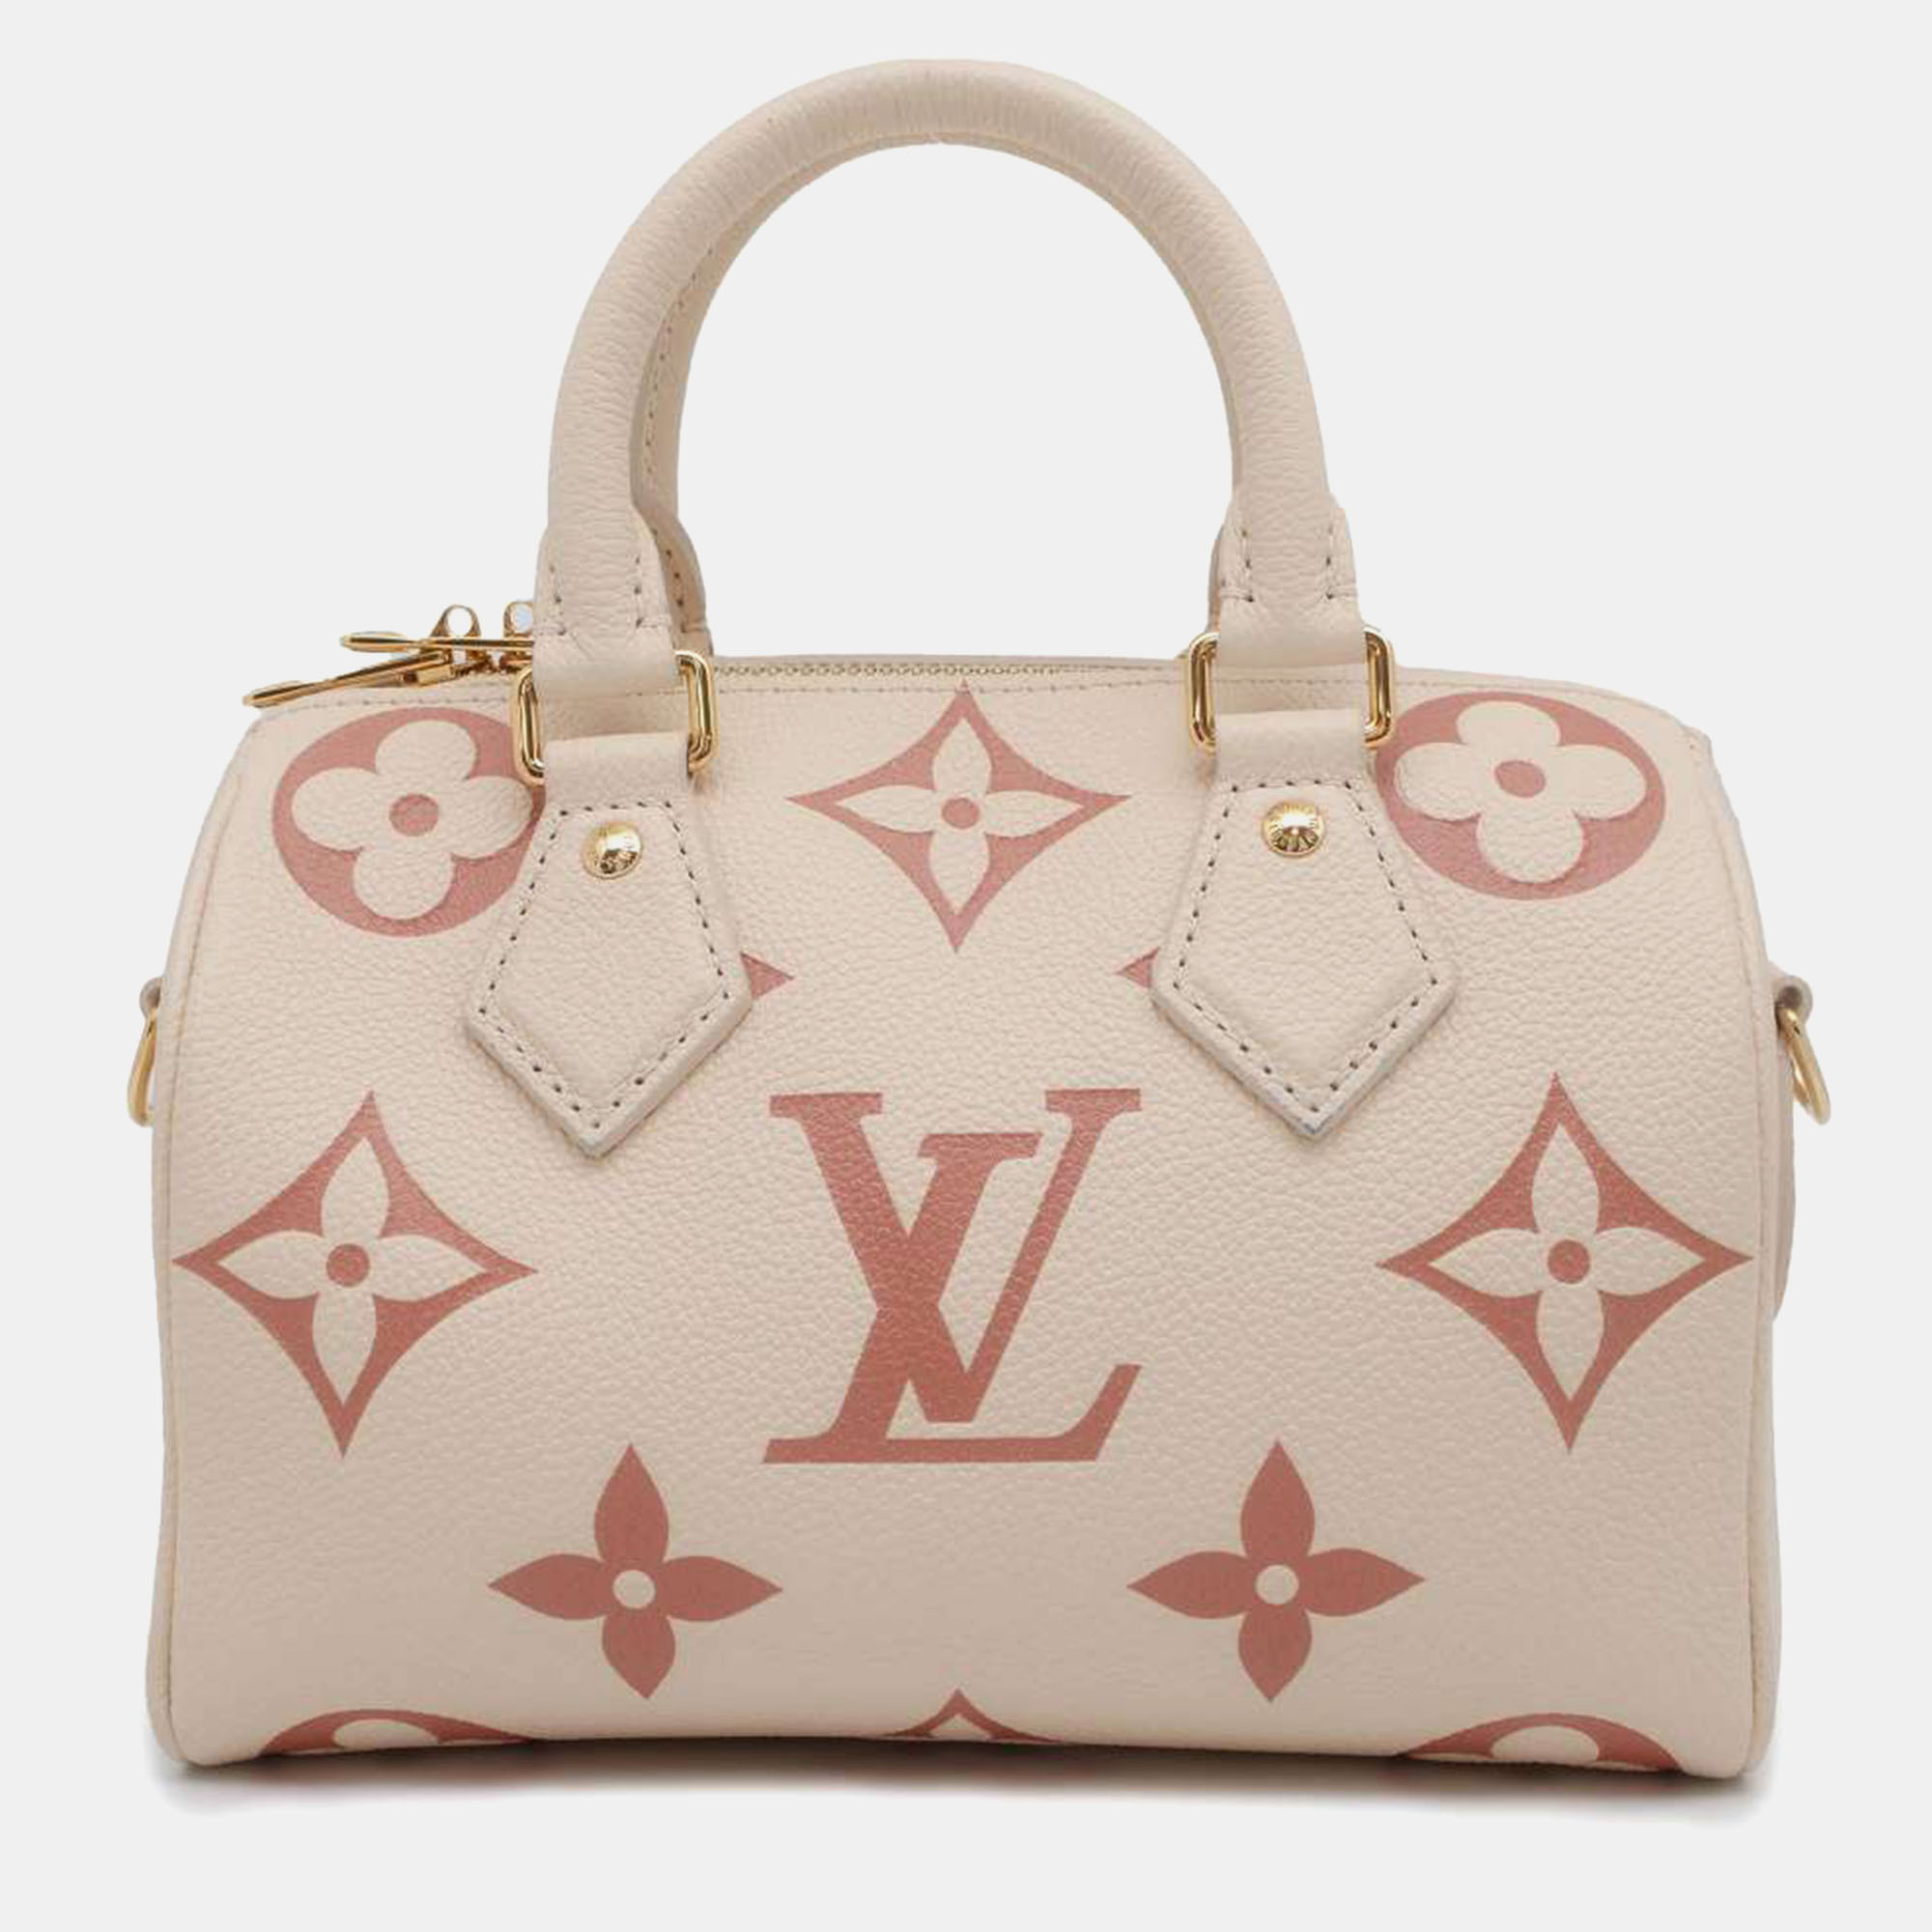 Louis vuitton cream/pink monogram empreinte leather speedy bandouliere 20 bag